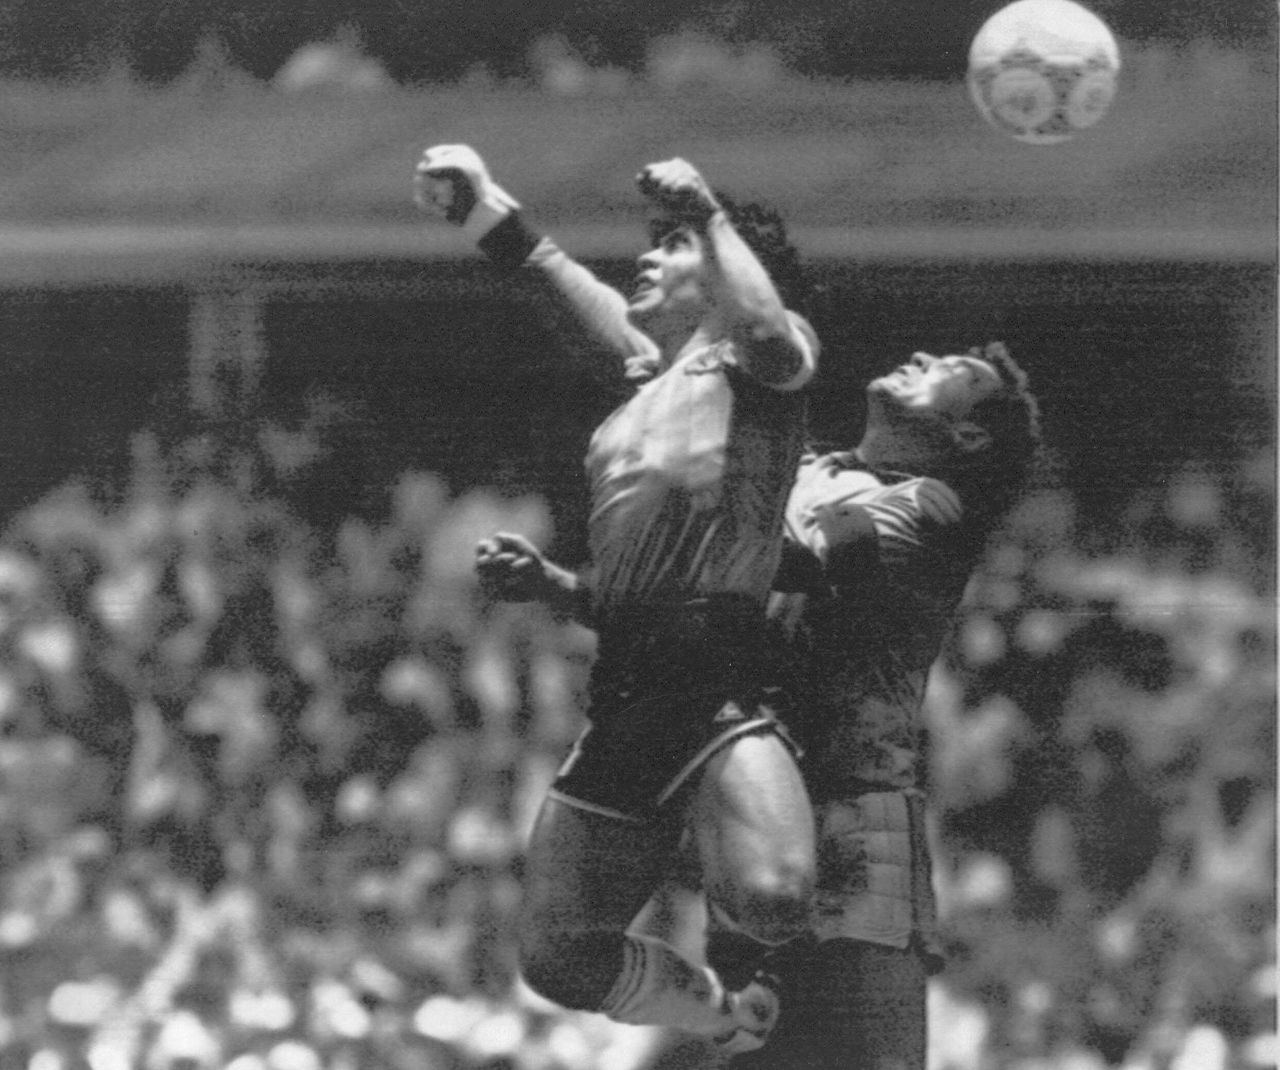 «Το Χέρι του Θεού». Ο Ντιέγκο Μαραντόνα προλαμβάνει την έξοδο του Άγγλου τερματοφύλακα Πίτερ Σίλτον και σκοράρει το πρώτο γκόλ της Αργεντινής, στο Στάδιο Αζτέκα του Μέξικο Σίτι, στις 22 Ιουνίου 1986. Η Αργεντινή θα επικρατήσει με 2-1 της Αγγλίας και θα προκριθεί στα ημιτελικά. Επτά μερες μετά η Αργεντινή θα στεφθεί παγκόσμια πρωταθλήτρια.